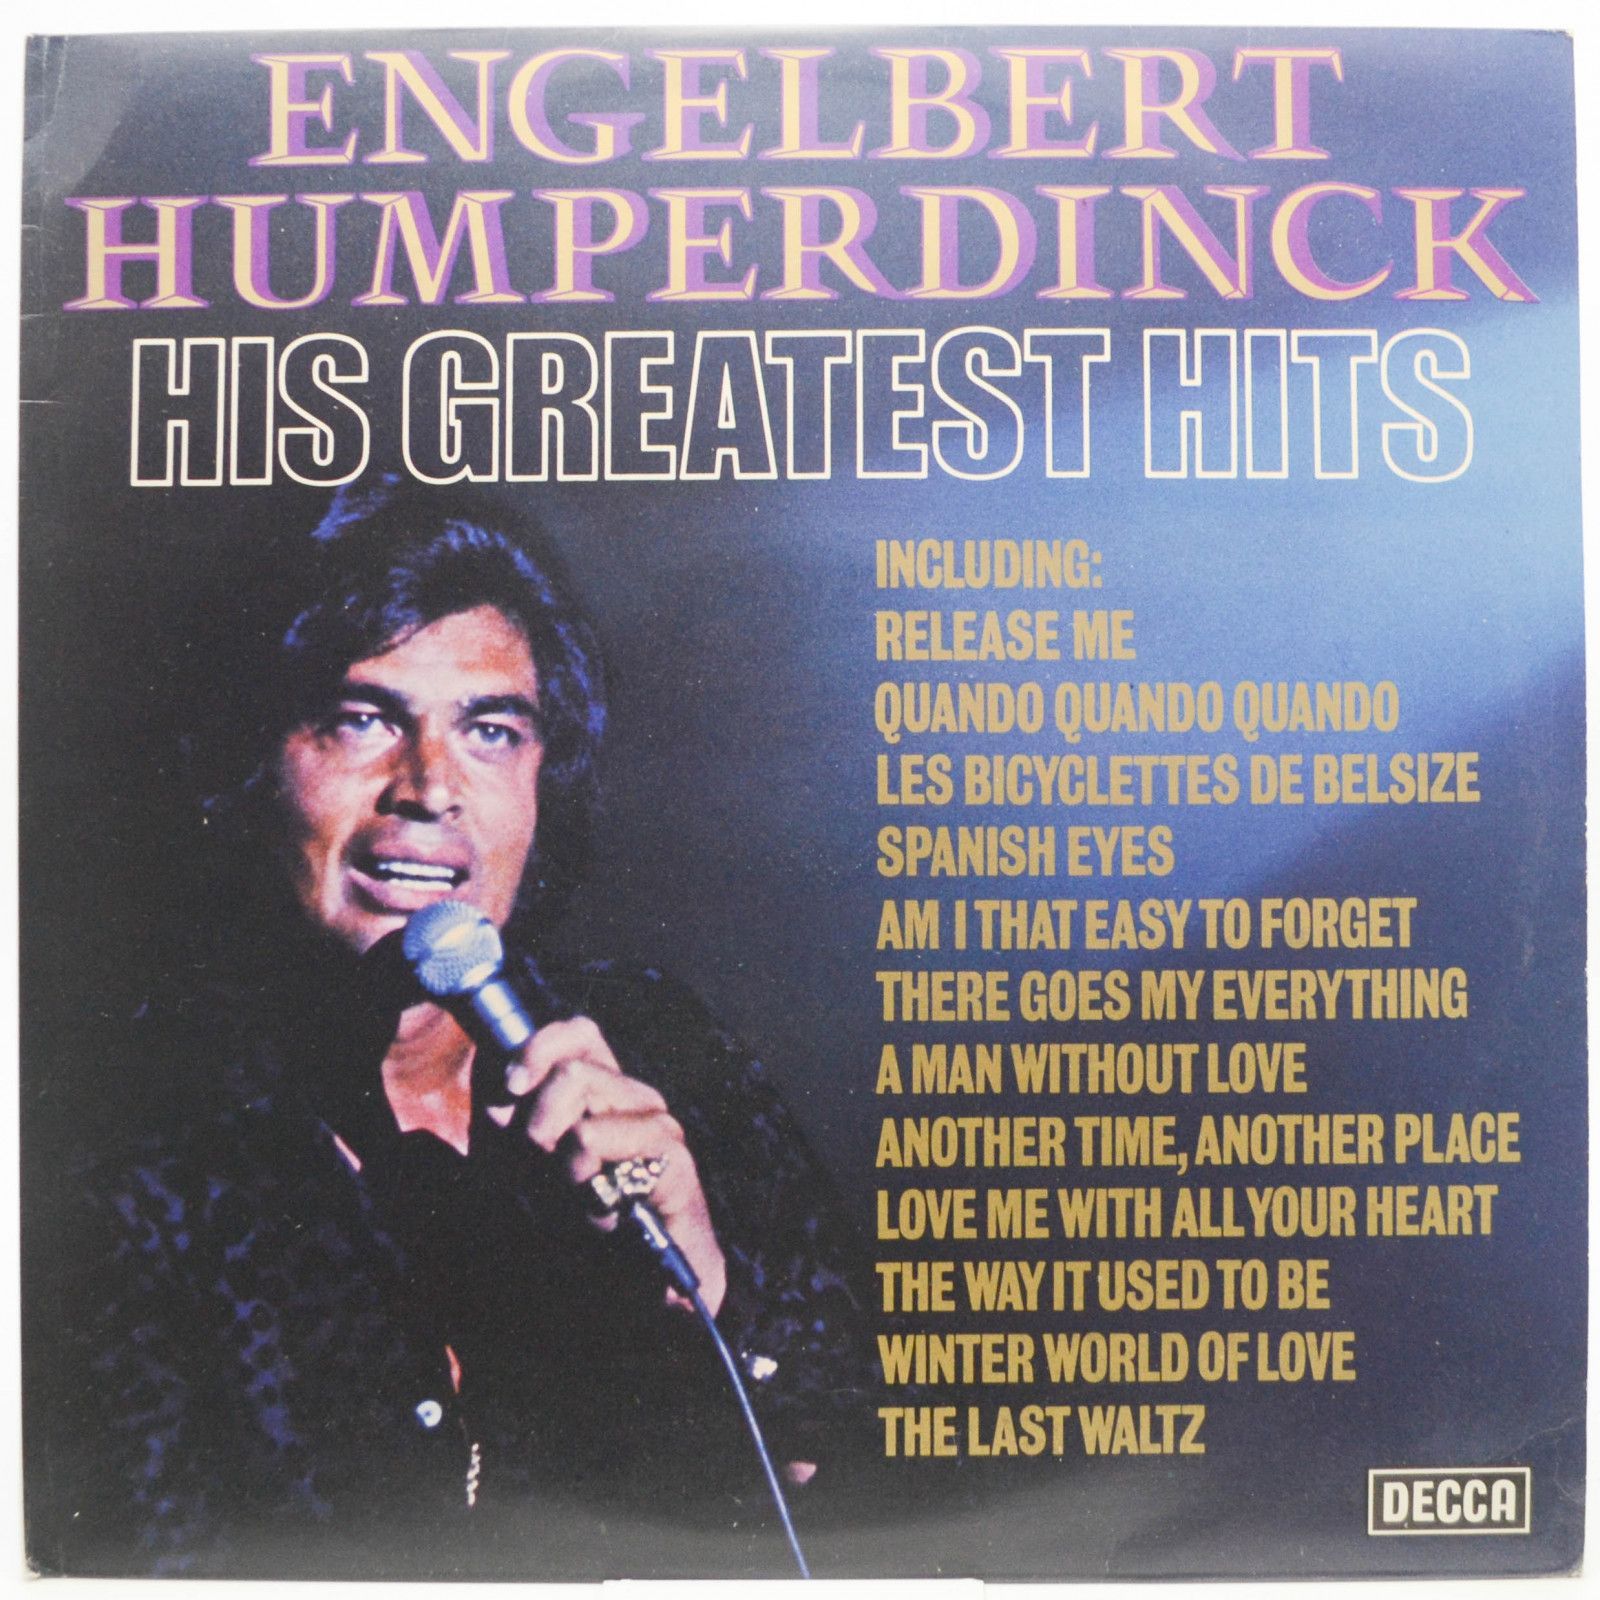 Engelbert Humperdinck — His Greatest Hits (UK), 1974